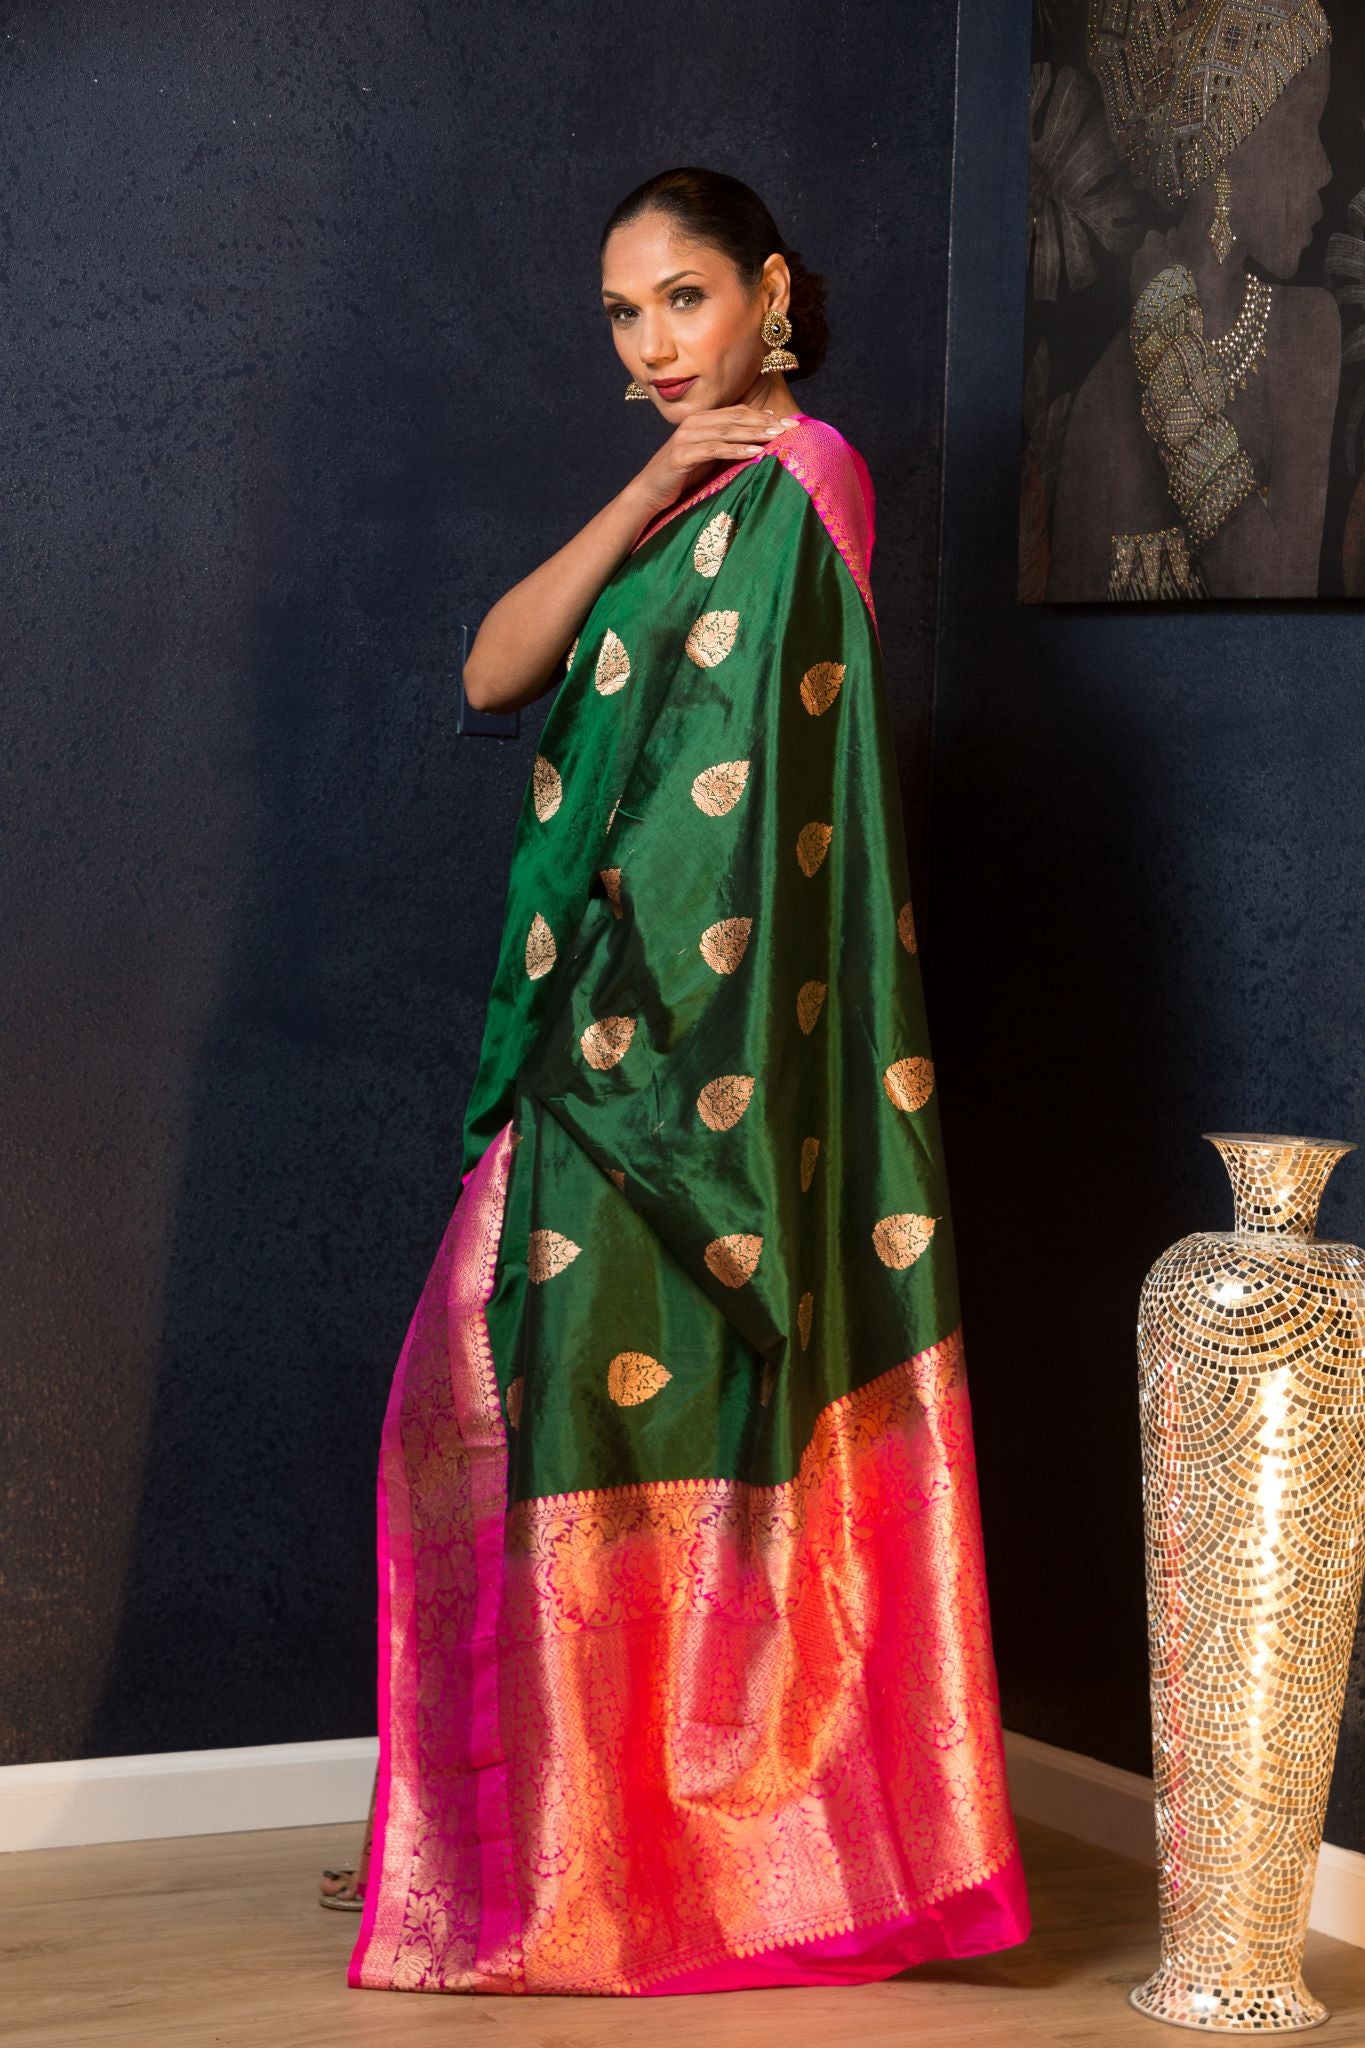 Green Katan Banarasi Silk Saree Embellished with Golden Floral Motifs and Pink Border - Anvi Couture